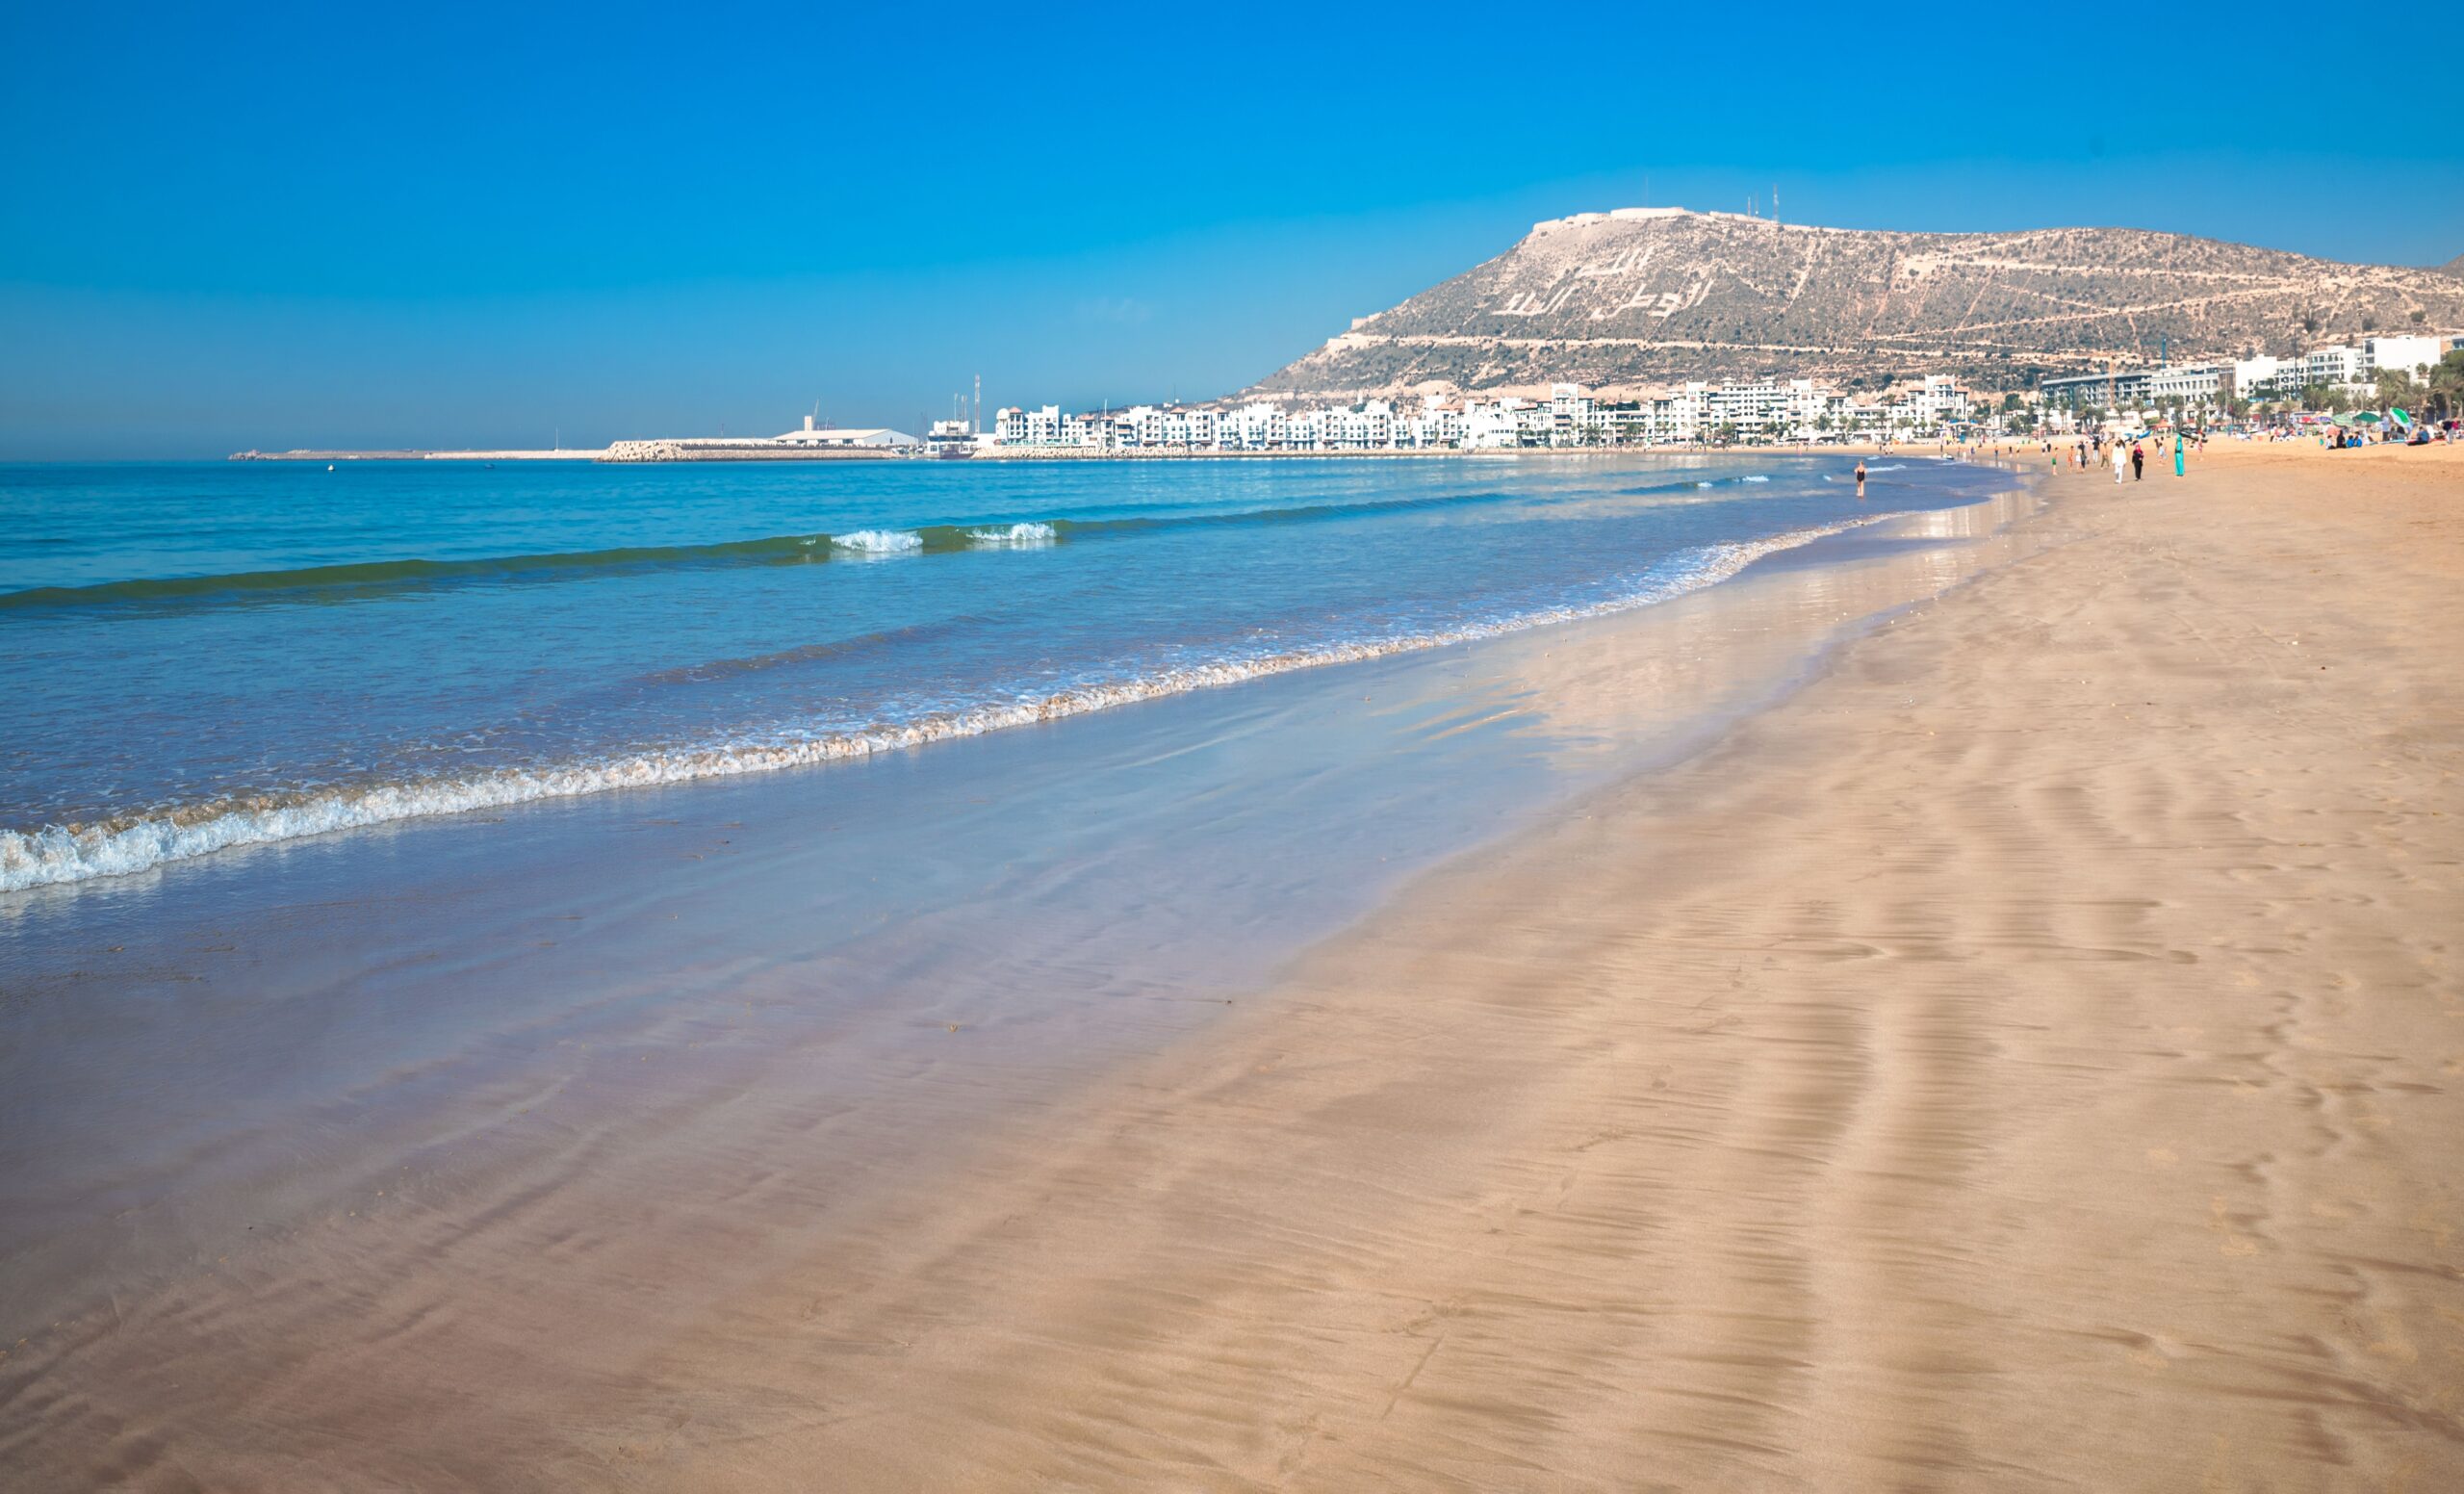 Marakeš in počitnice v Agadirju<br />
Več odhodov, 8 dni